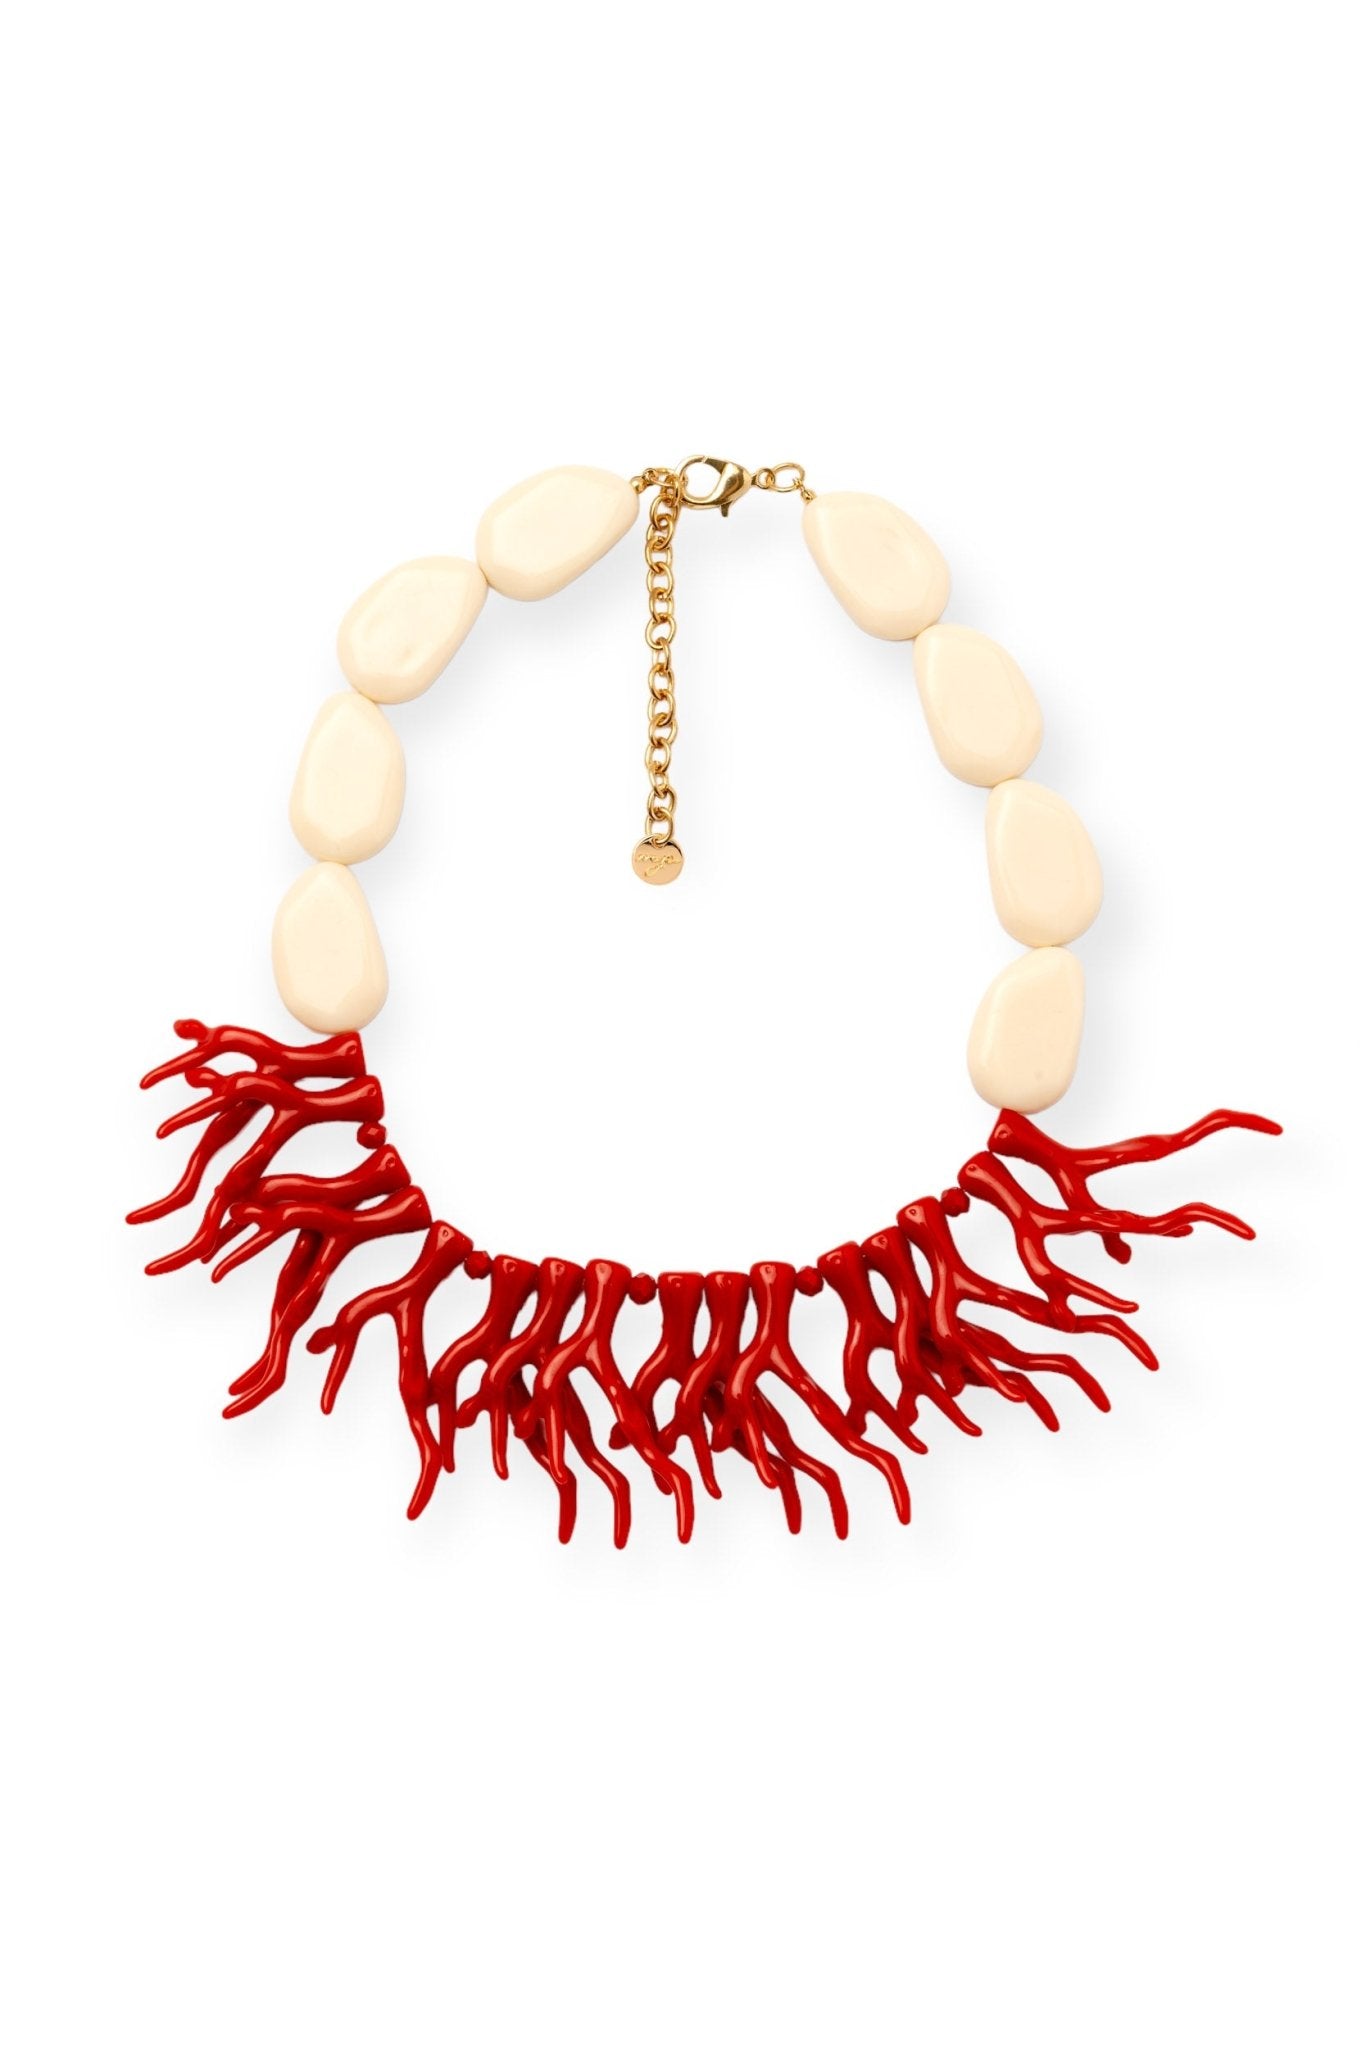 Girocollo bianco con corallo rosso - Mya Accessories